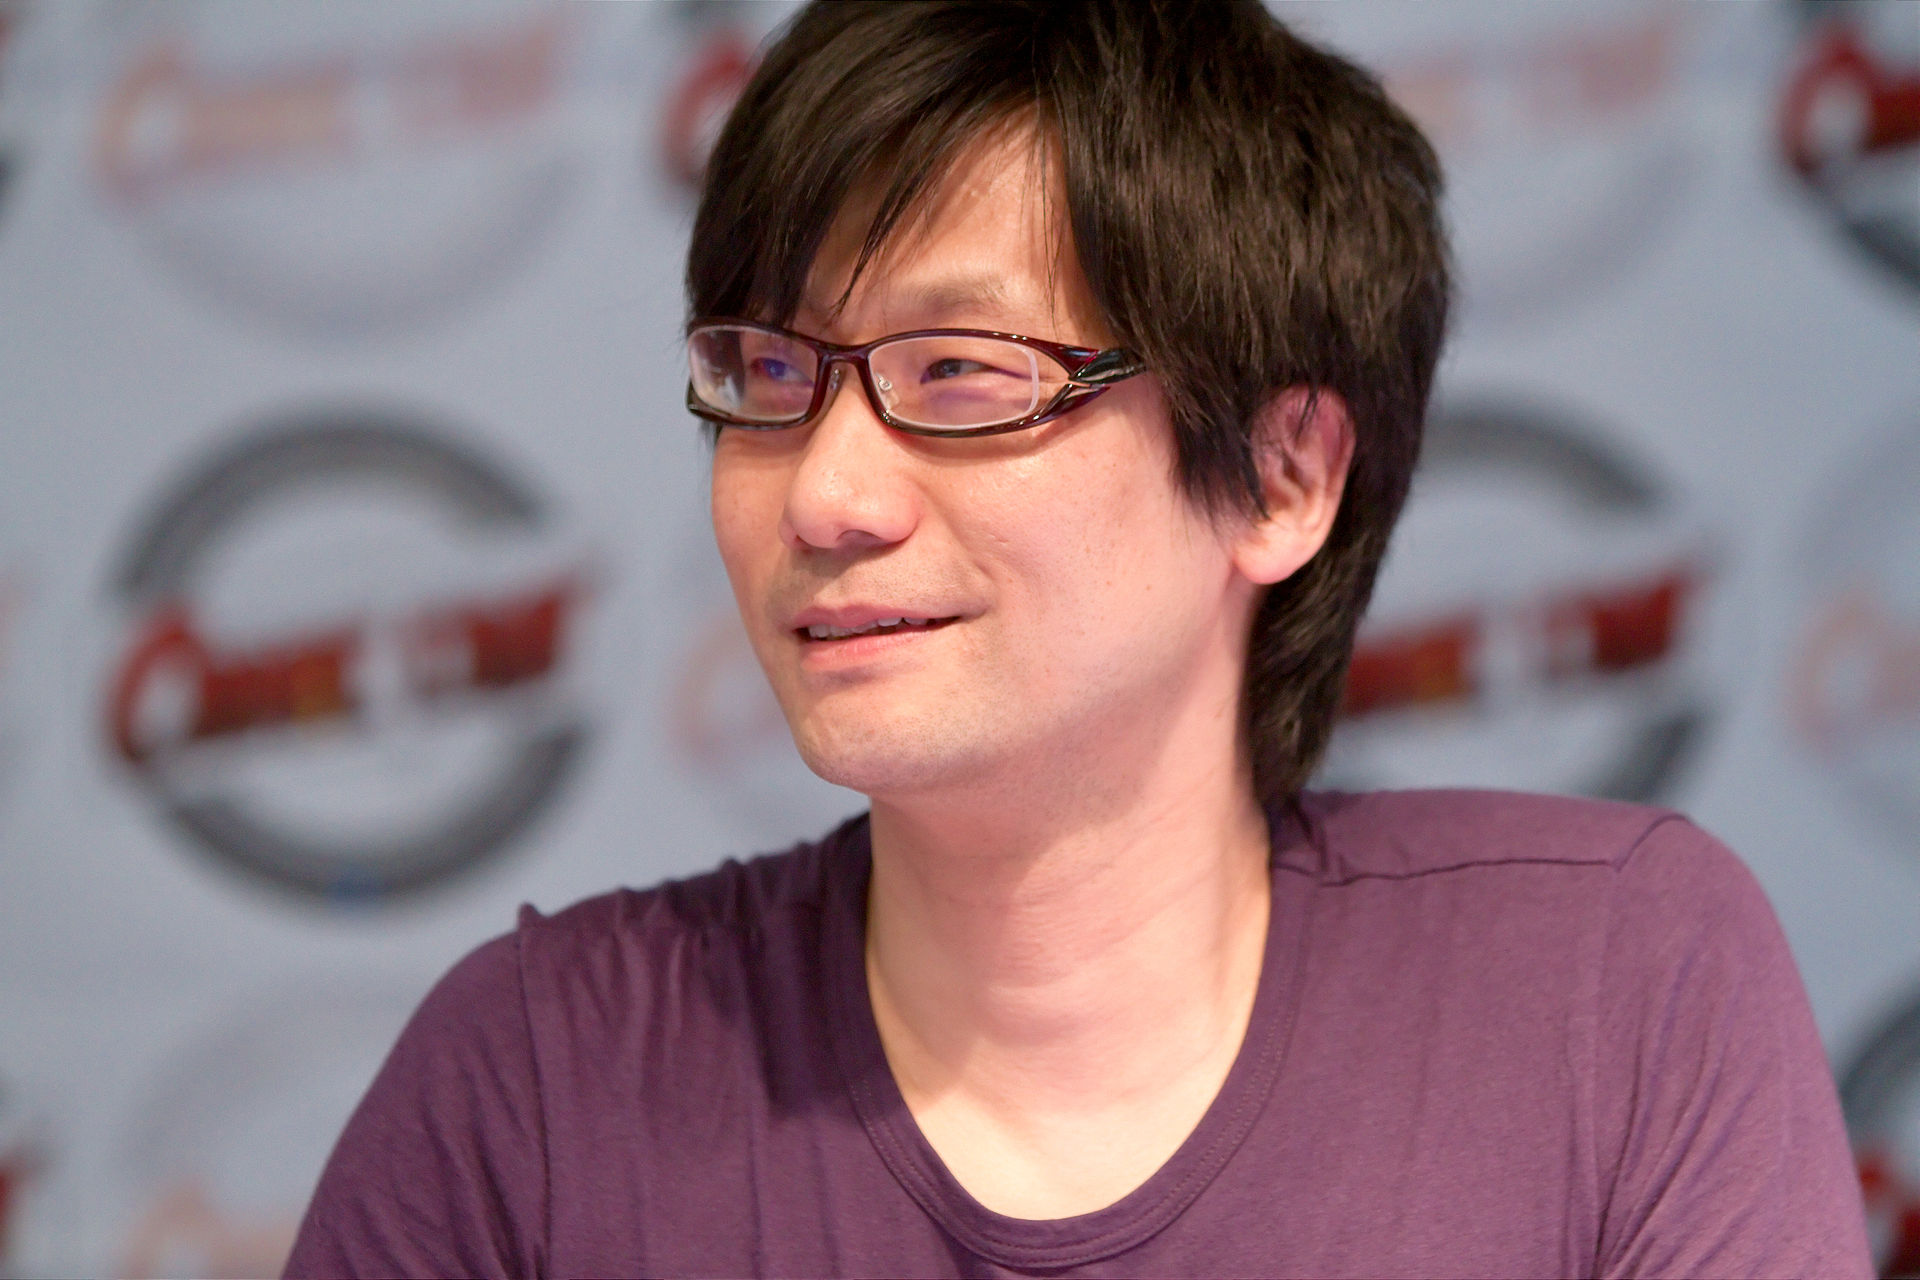 Entwickler-Legende Hideo Kojima spielte mal mit der Idee, euch 2 Wochen lang gegen einen Boss kämpfen zu lassen